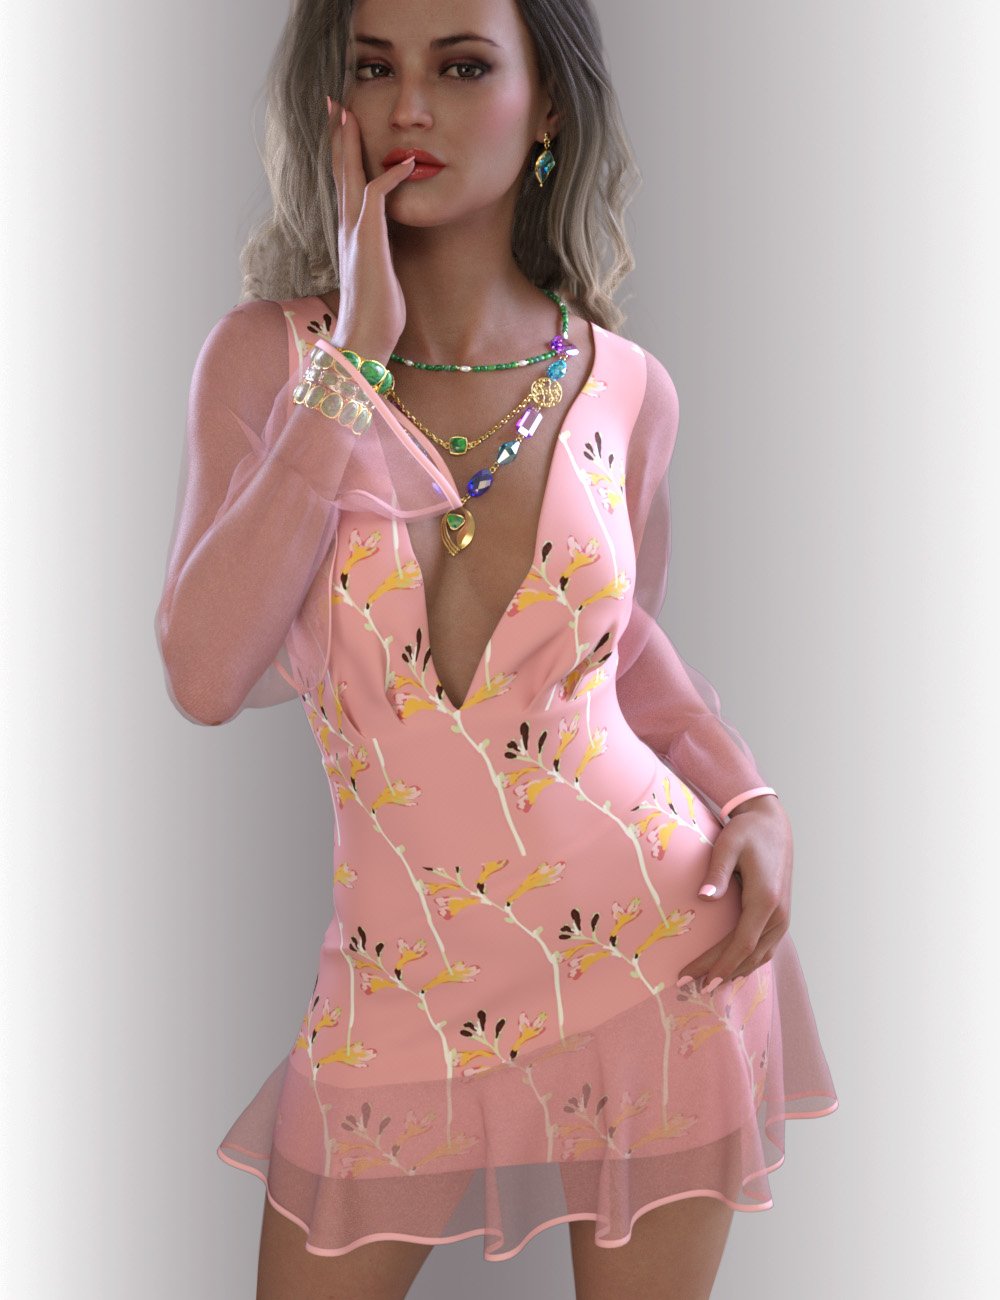 dForce Iris Dress Outfit for Genesis 8.1 Females by: OnnelArryn, 3D Models by Daz 3D